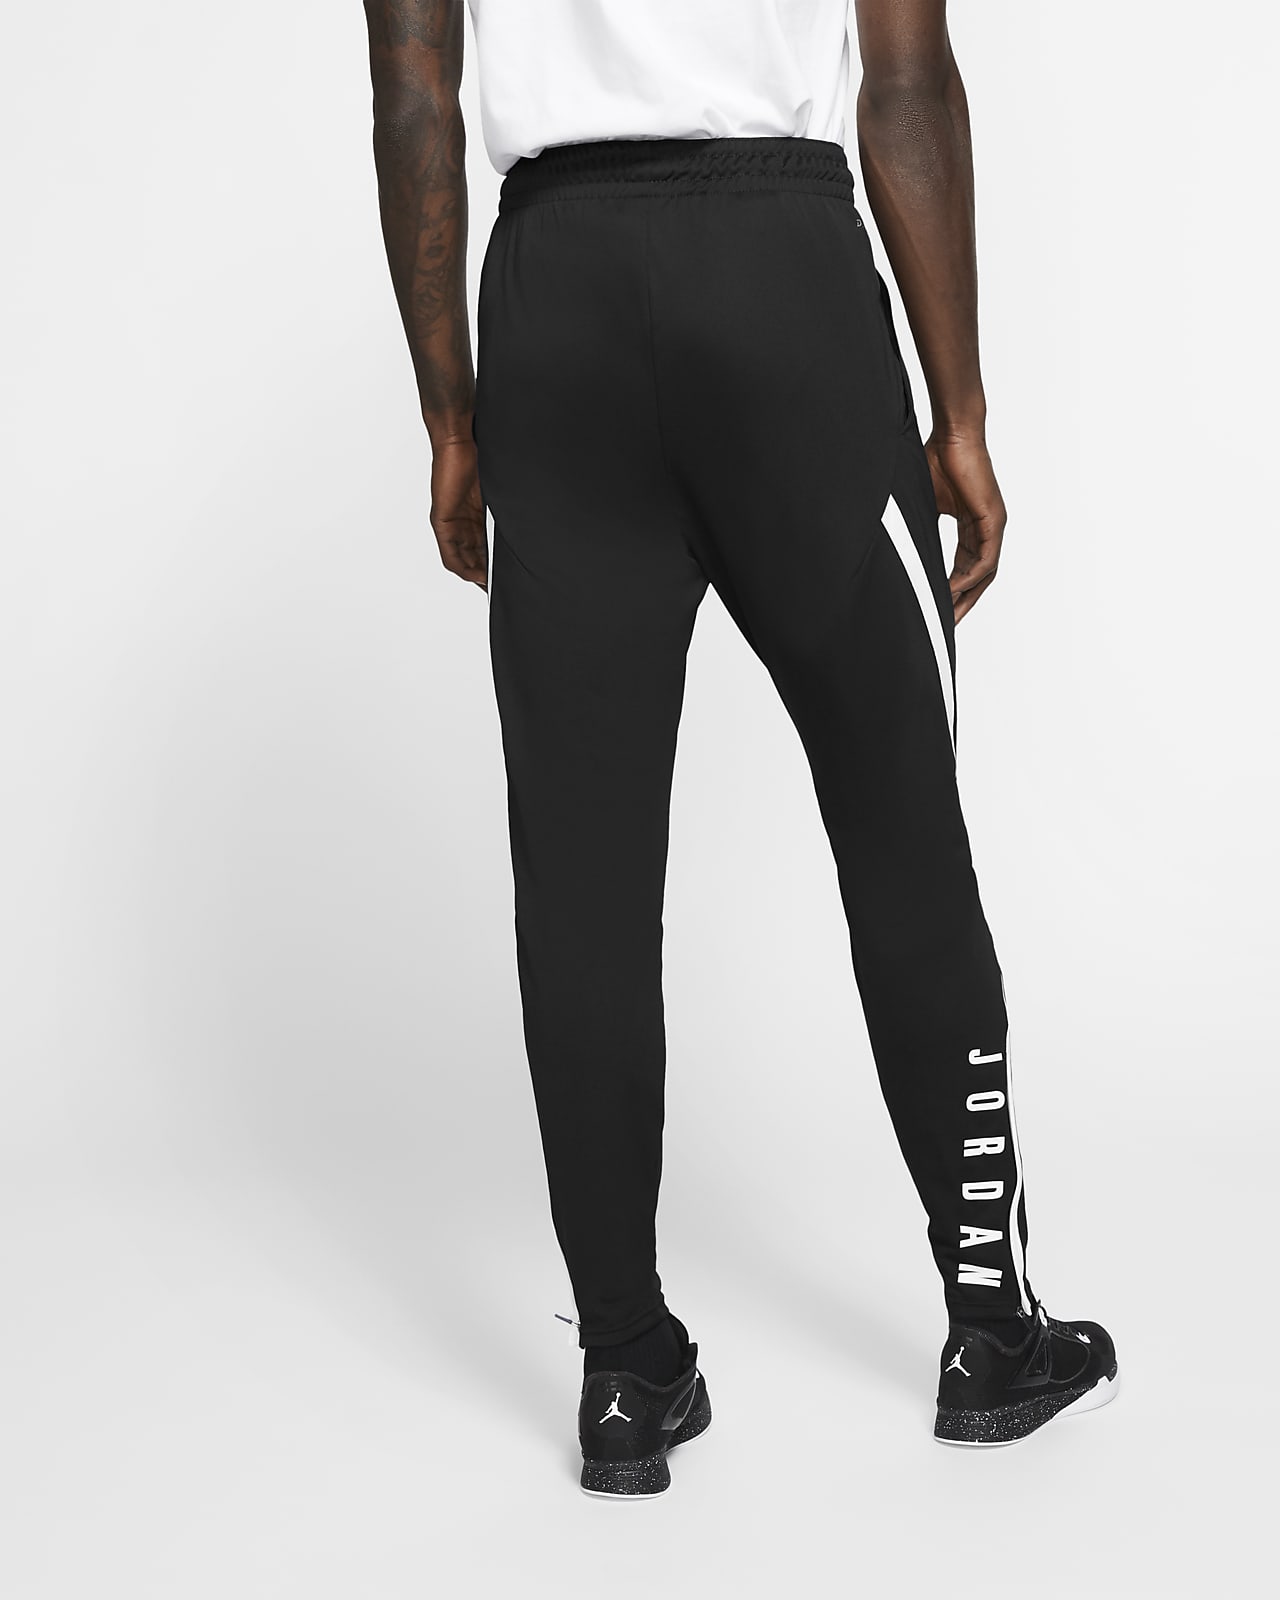 Pantalones para hombre Jordan 23 Alpha Dri-FIT. Nike.com